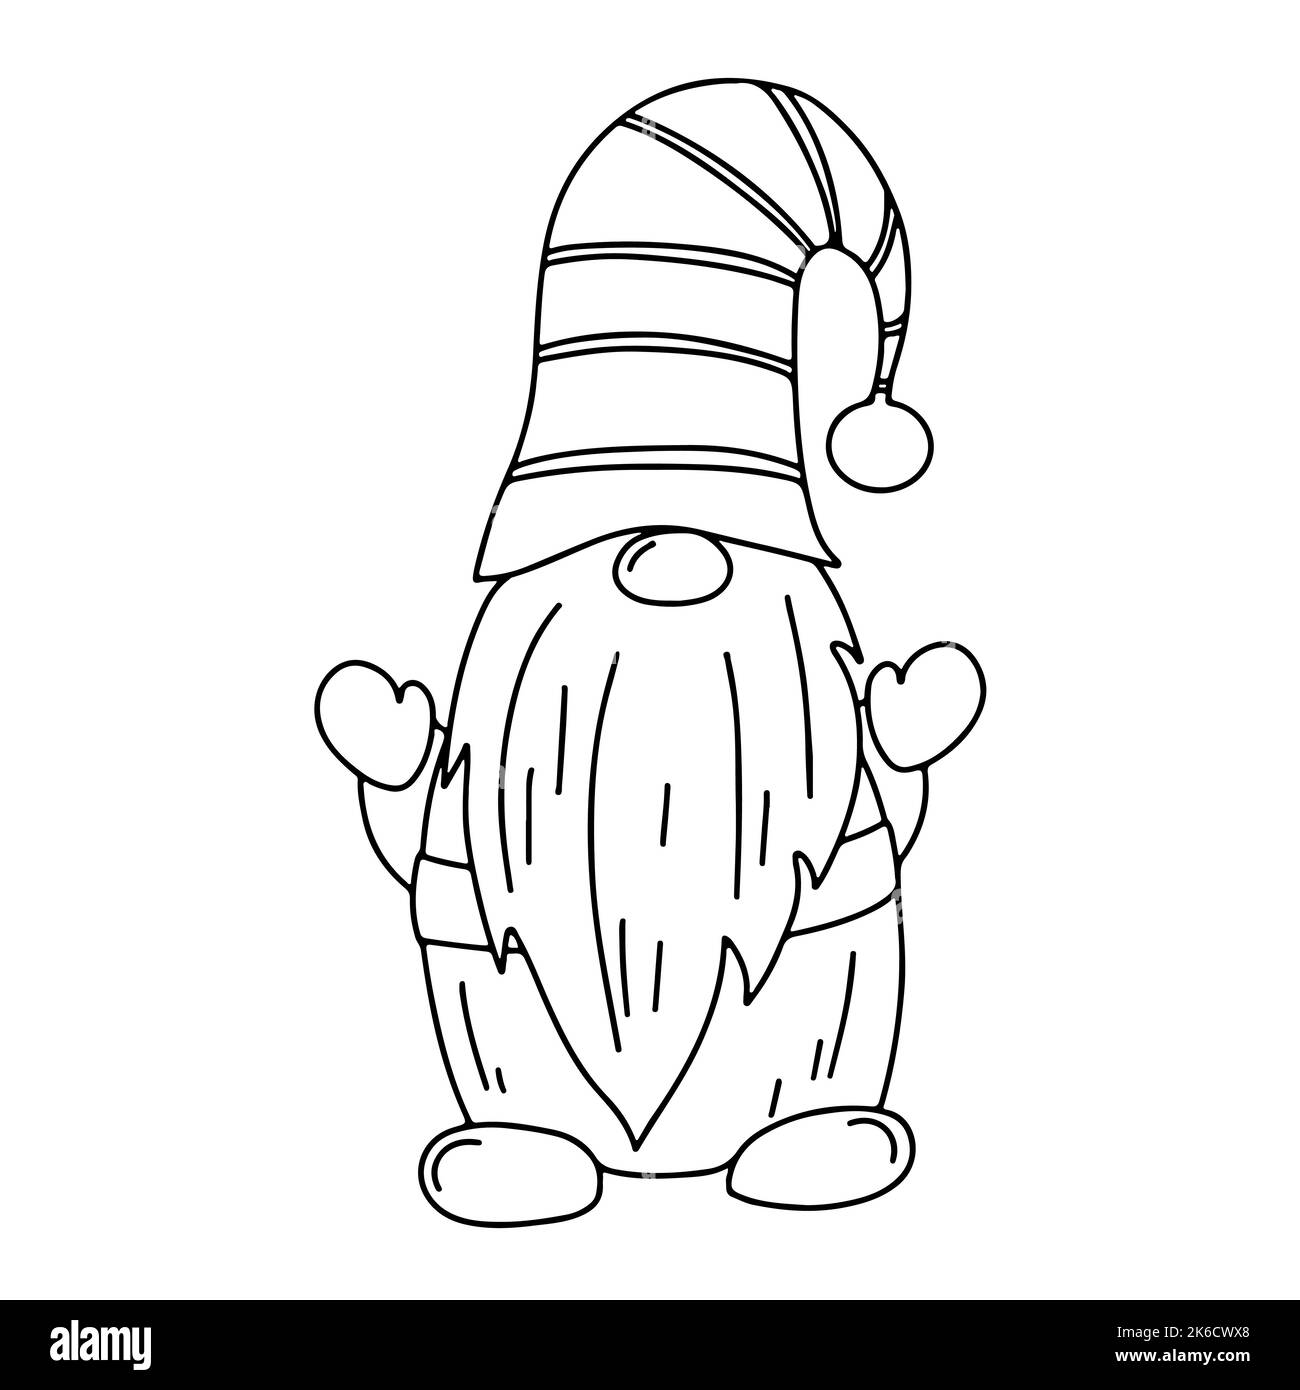 Niedlicher Zwerg im handgezeichneten Doodle-Stil. GNOME winkt mit den Händen. Märchenfigur im Skizzenstil Stock Vektor